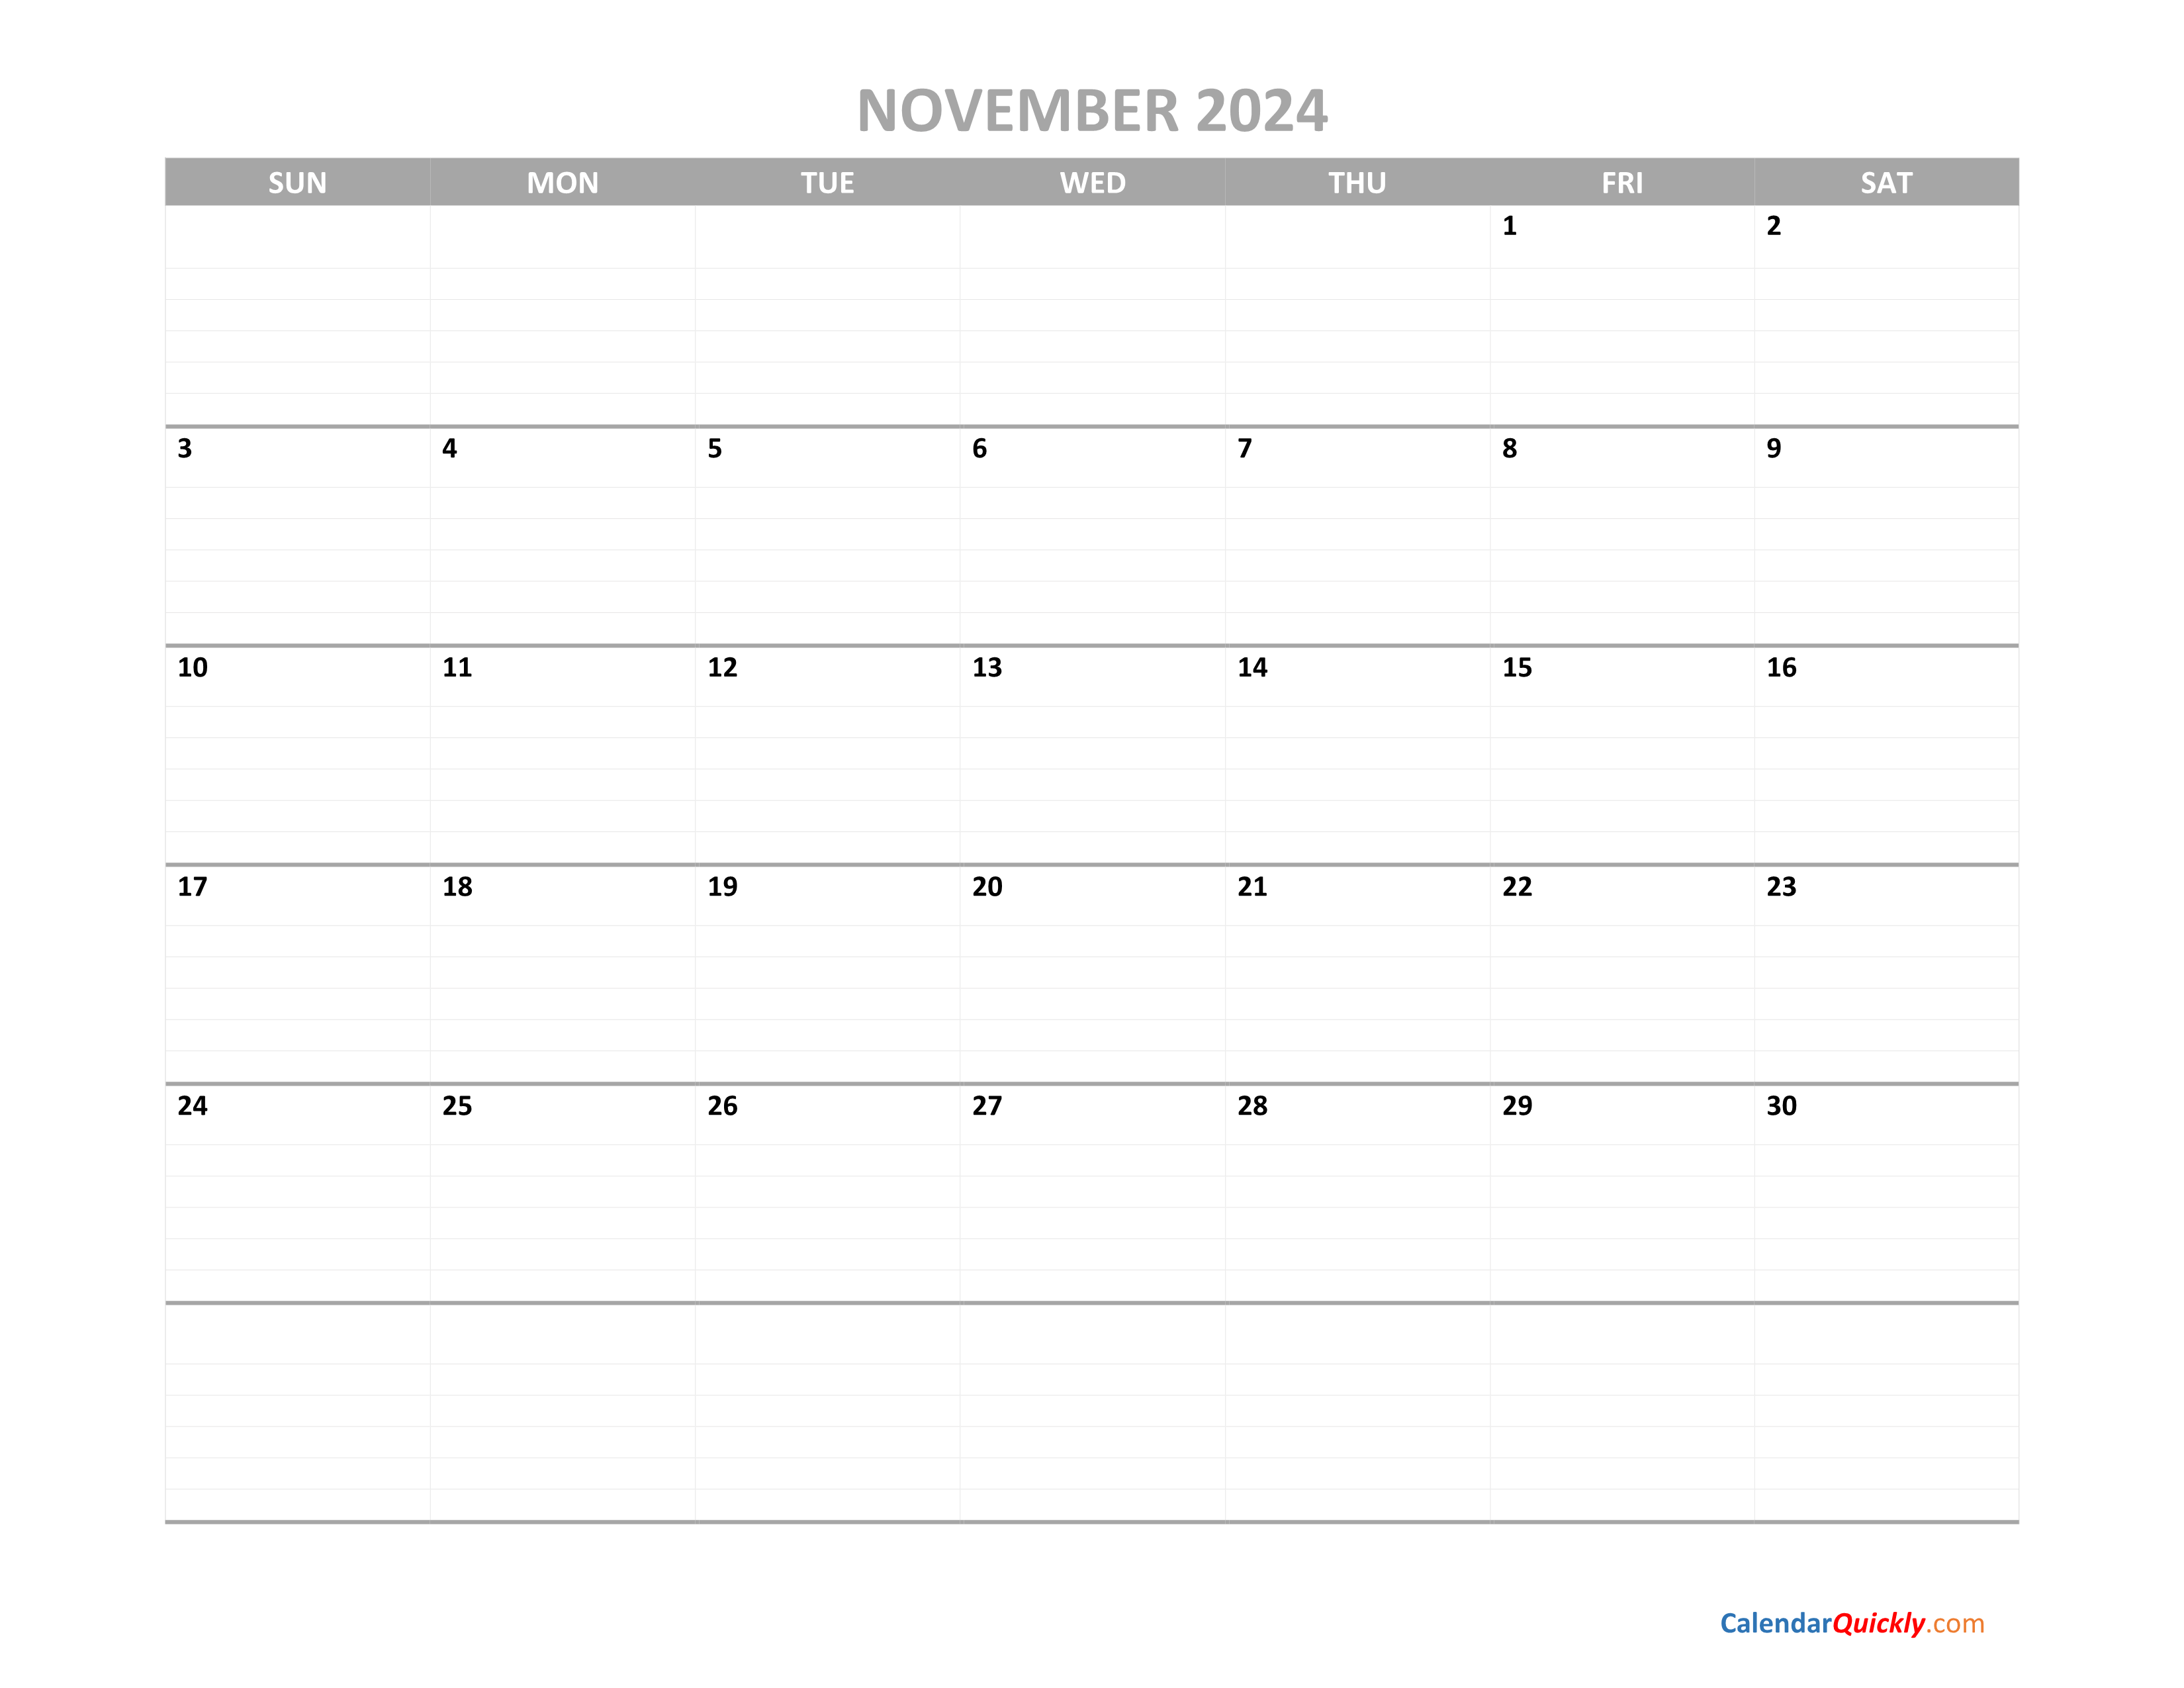 November Calendar 2024 Printable Calendar Quickly